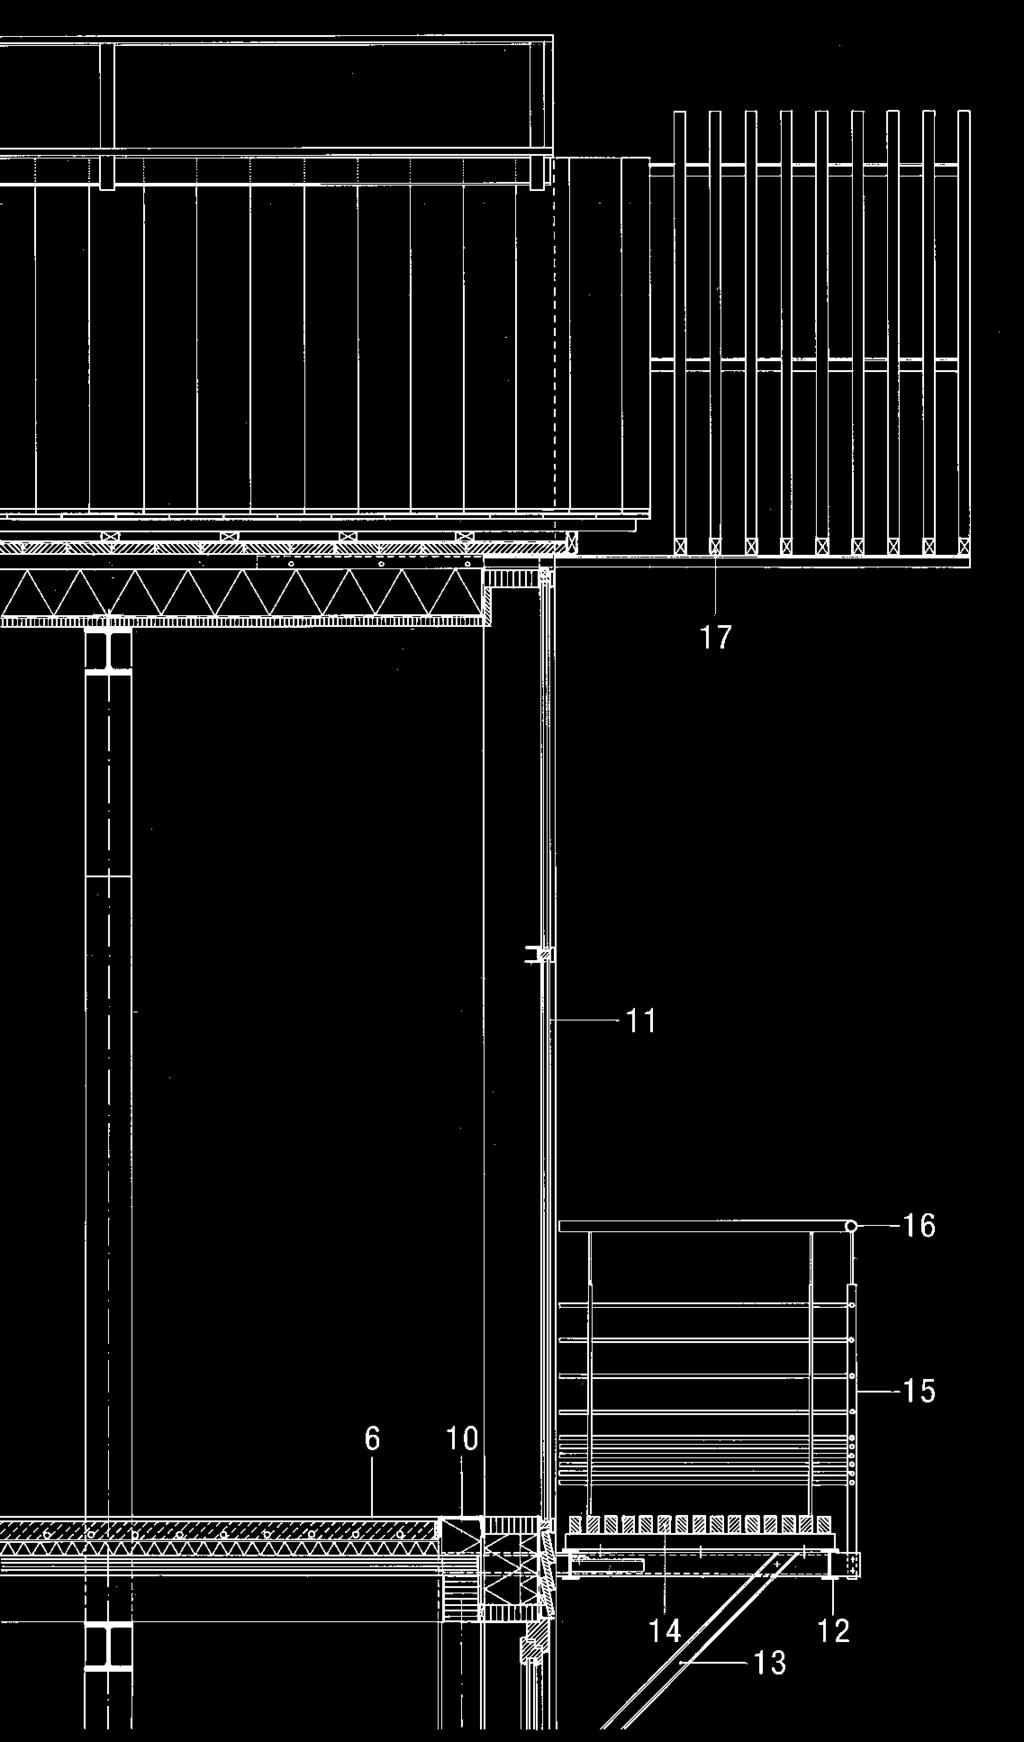 Wohnungsbau mit Stahl 077 Fassadenlängsschnitt Horizontalschnitt Maßstab 1:40 1 Stütze HEB 160 2 Träger HEB 160